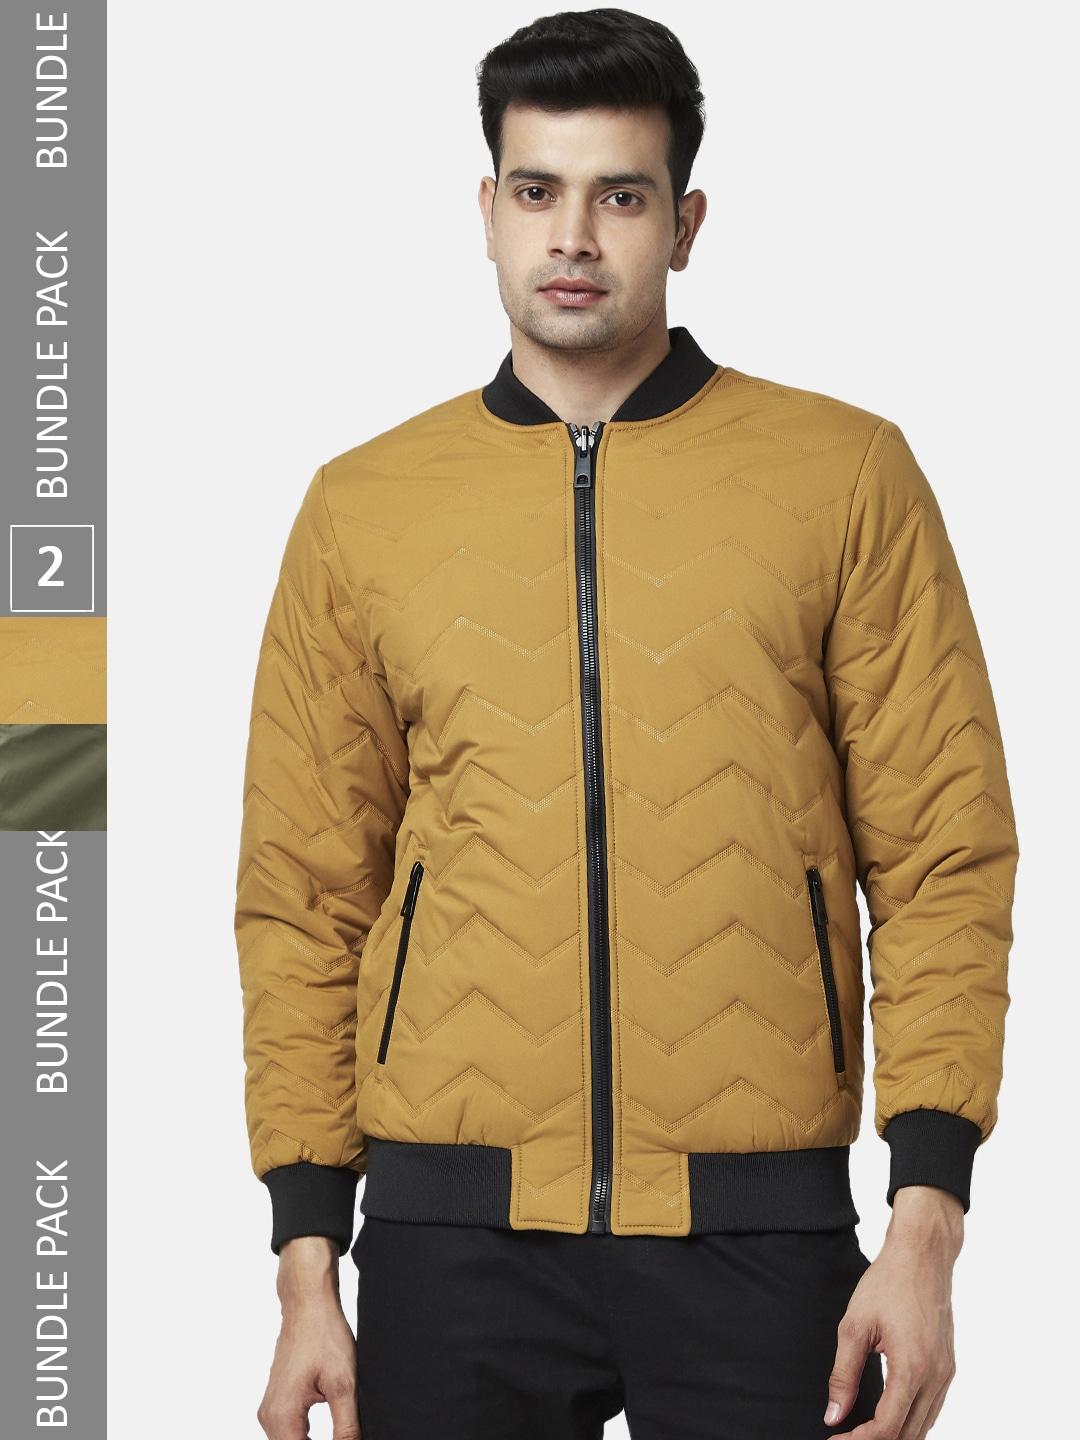 urban-ranger-by-pantaloons-men-mustard-reversible-bomber-jacket